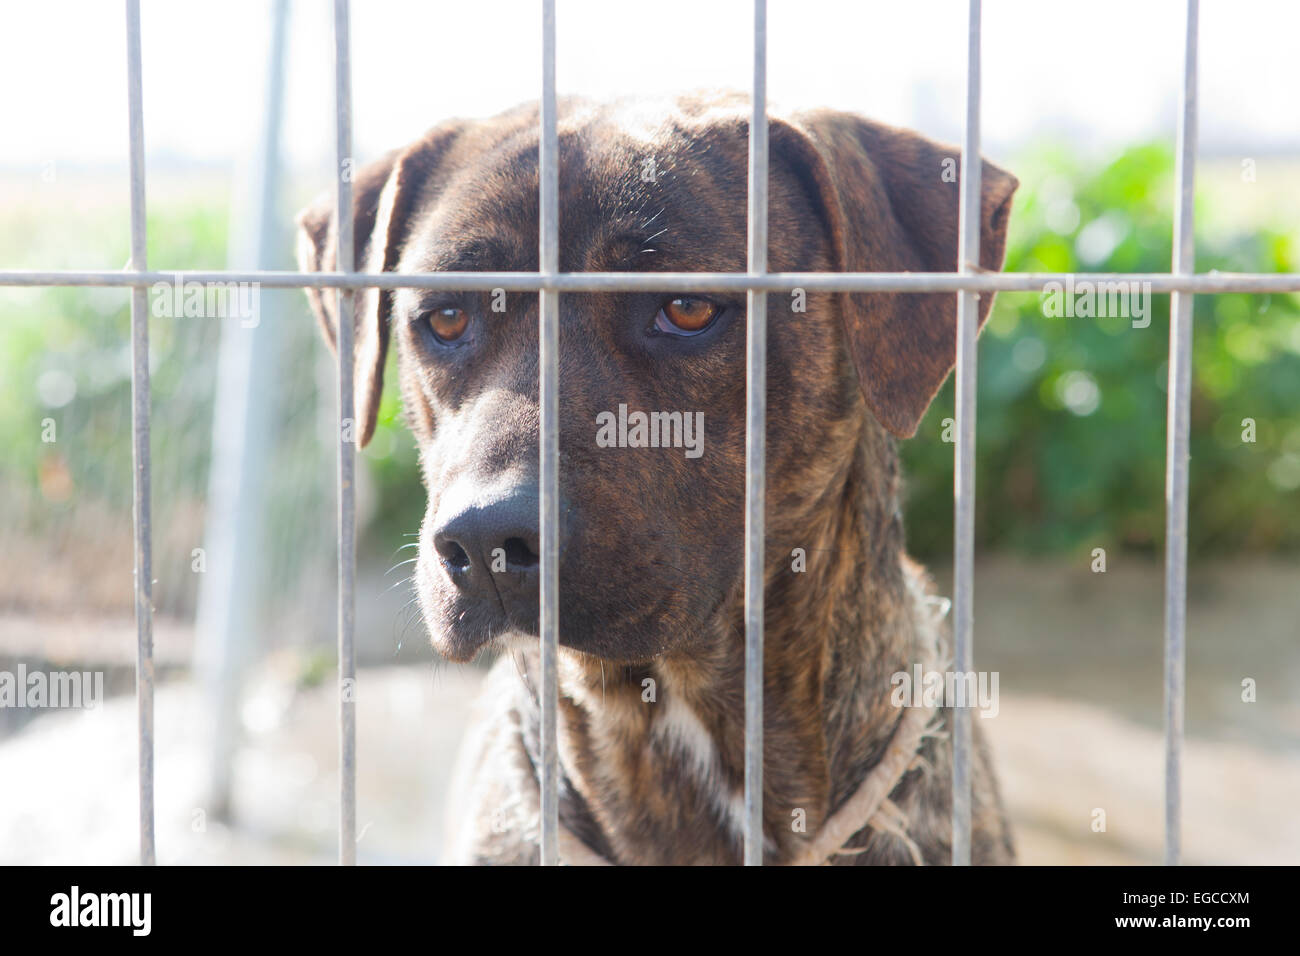 Kanarische fangen Hund oder Presa Canario, ein großer Hund Molosser-Typ, Nehind den Zaun. Rasse, ursprünglich für das Vieh arbeiten Stockfoto